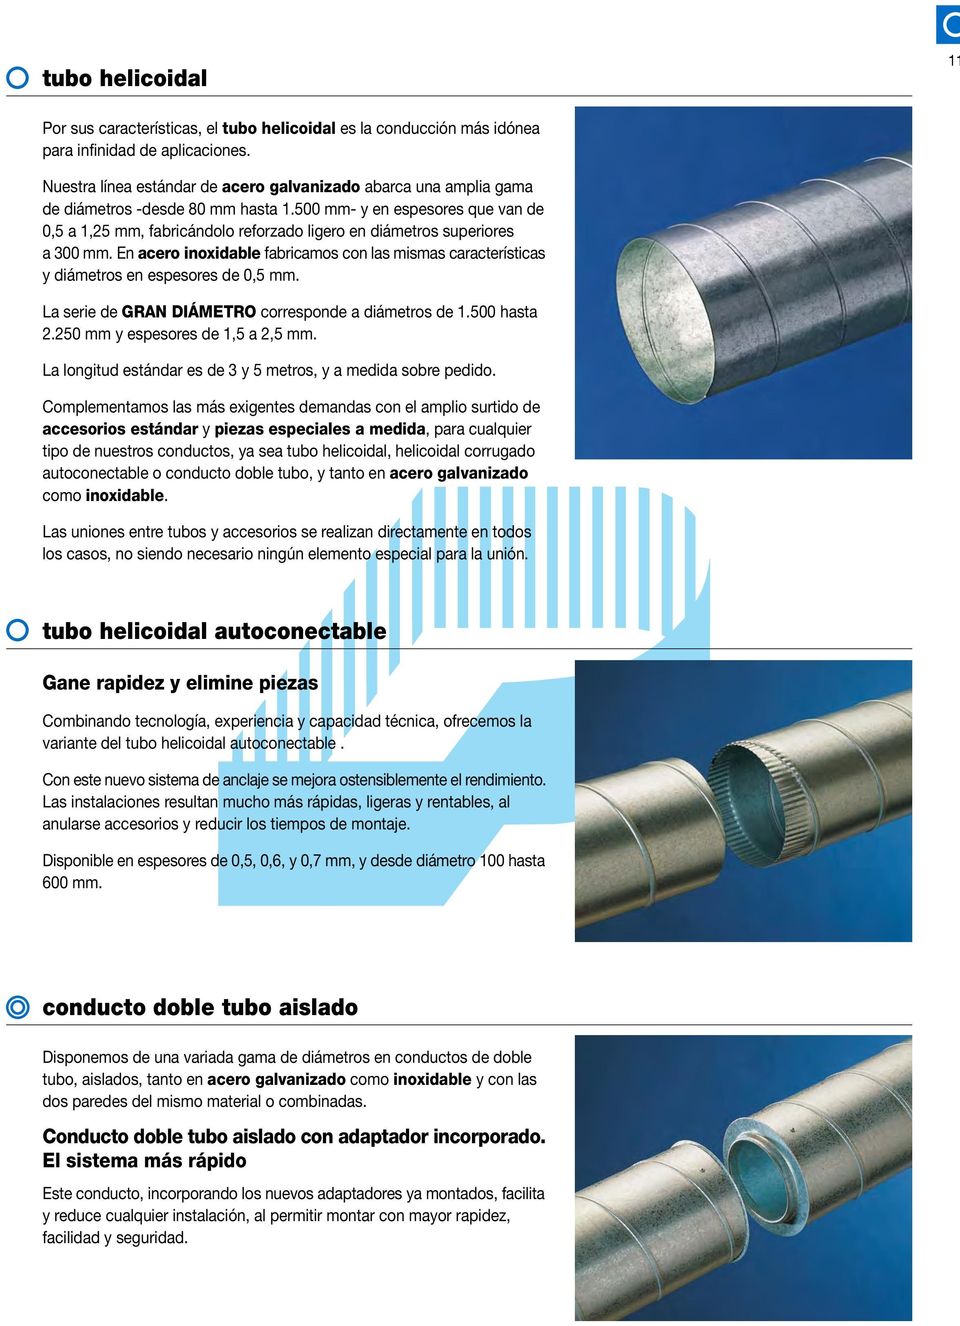 mezcla salud angustia circular helicoidal helicoidal autoconectable doble tubo aislado Shunt liso  autoconectable especiales aluminio comprimido - PDF Free Download